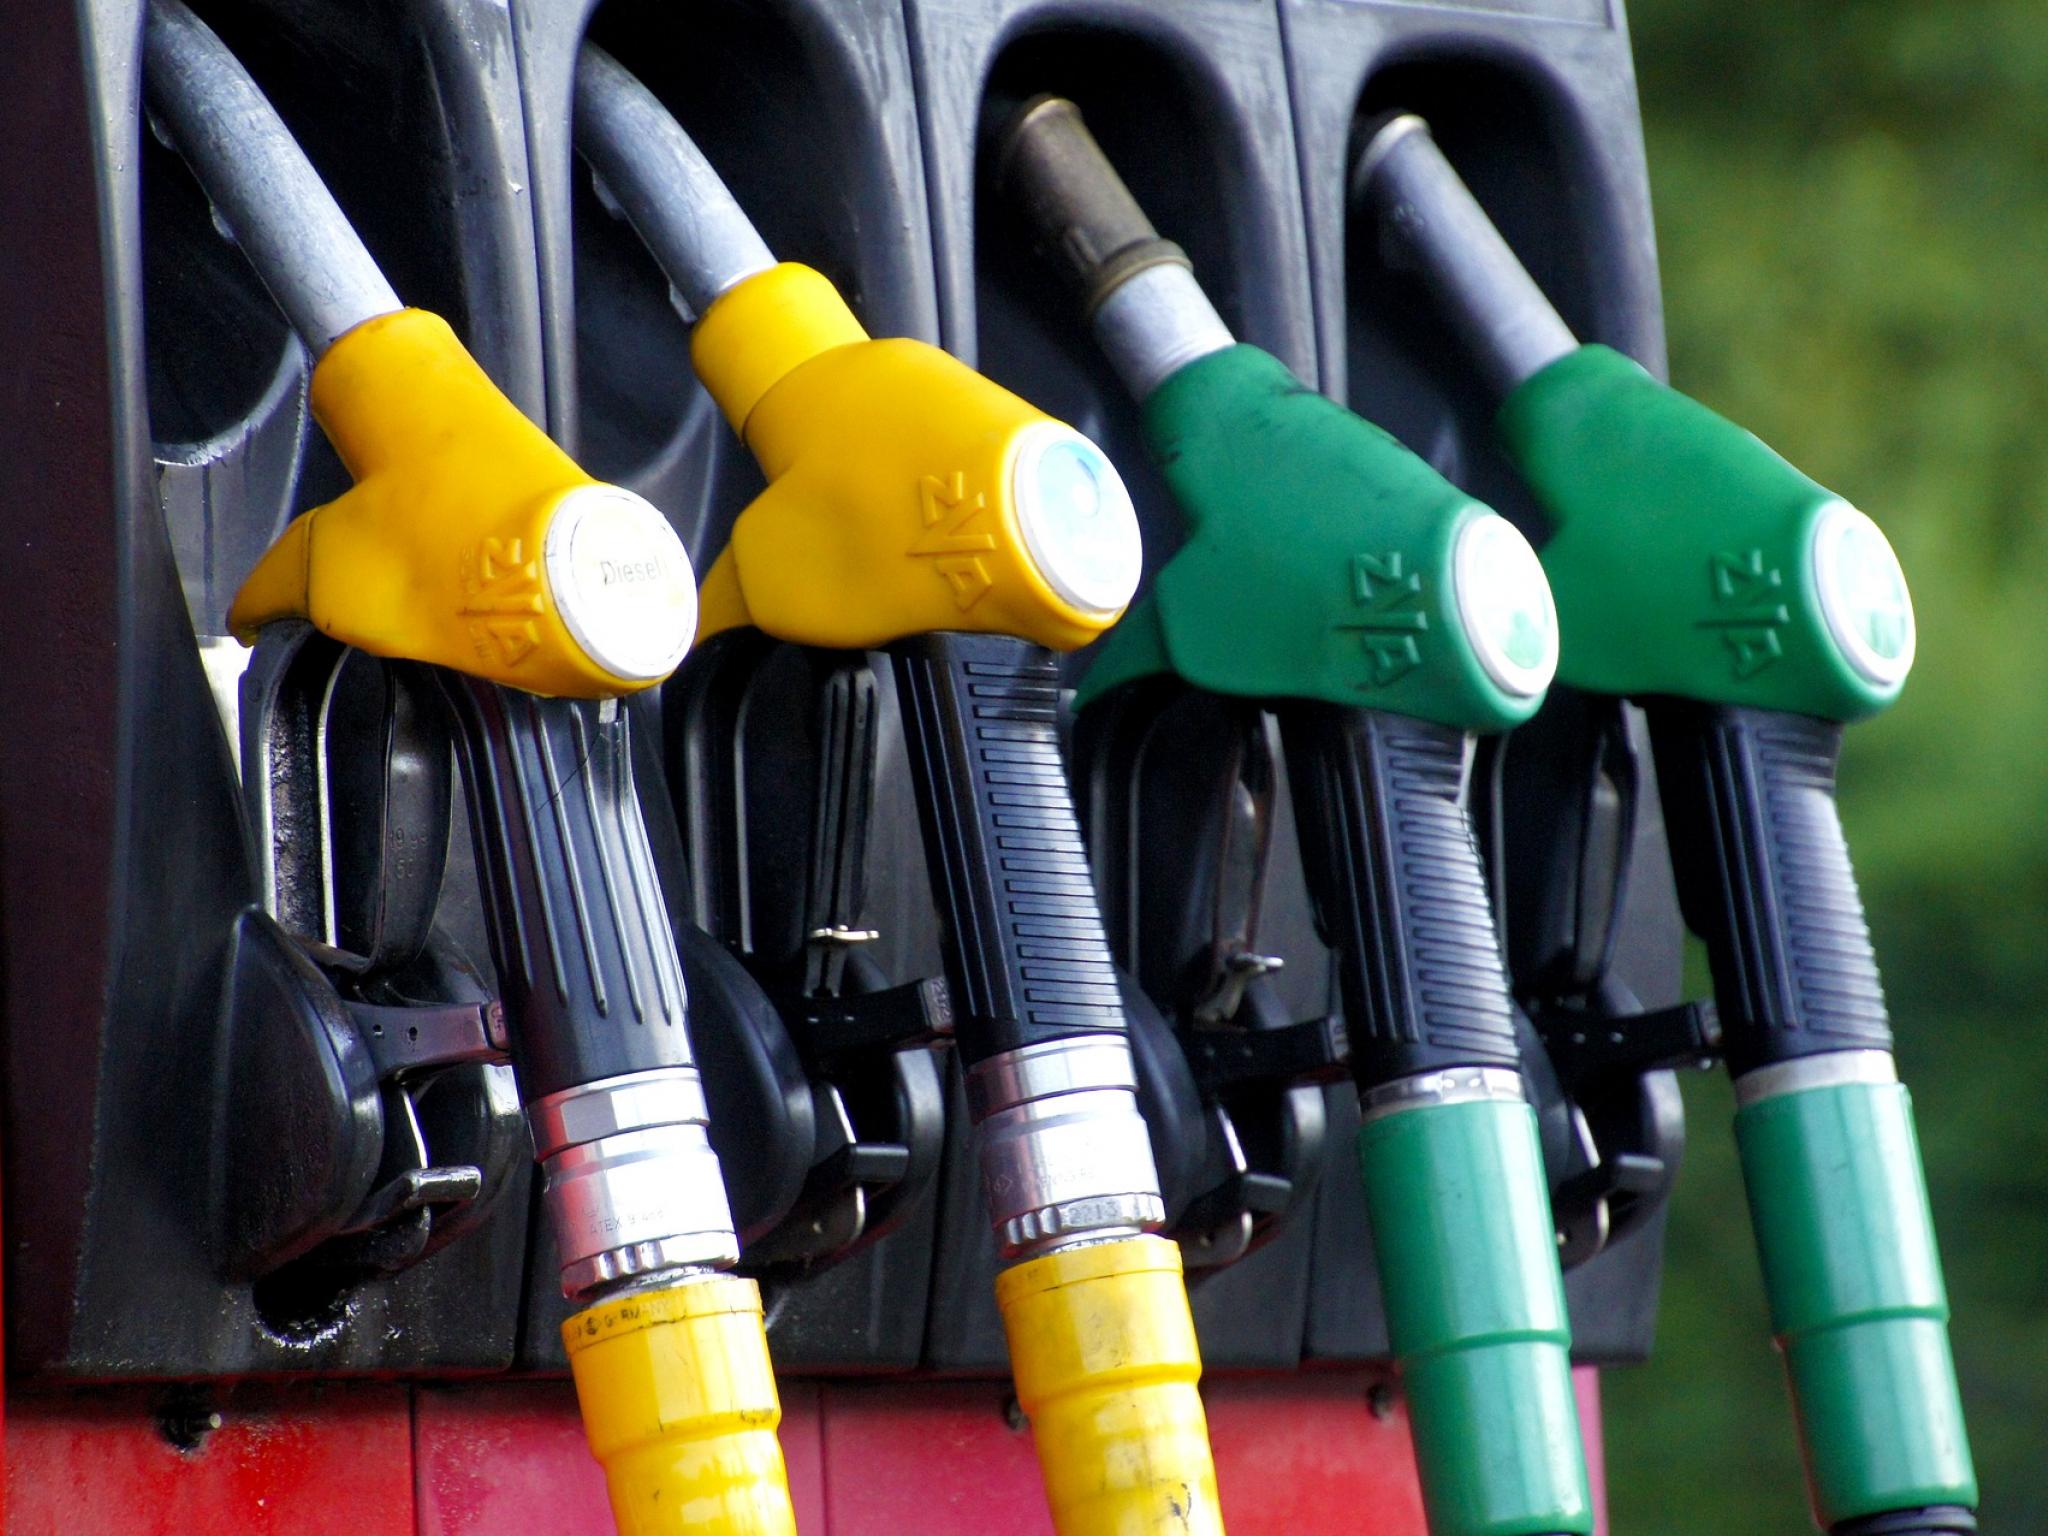  california-faces-rising-gasoline-prices-division-of-petroleum-market-oversight-raises-concerns 